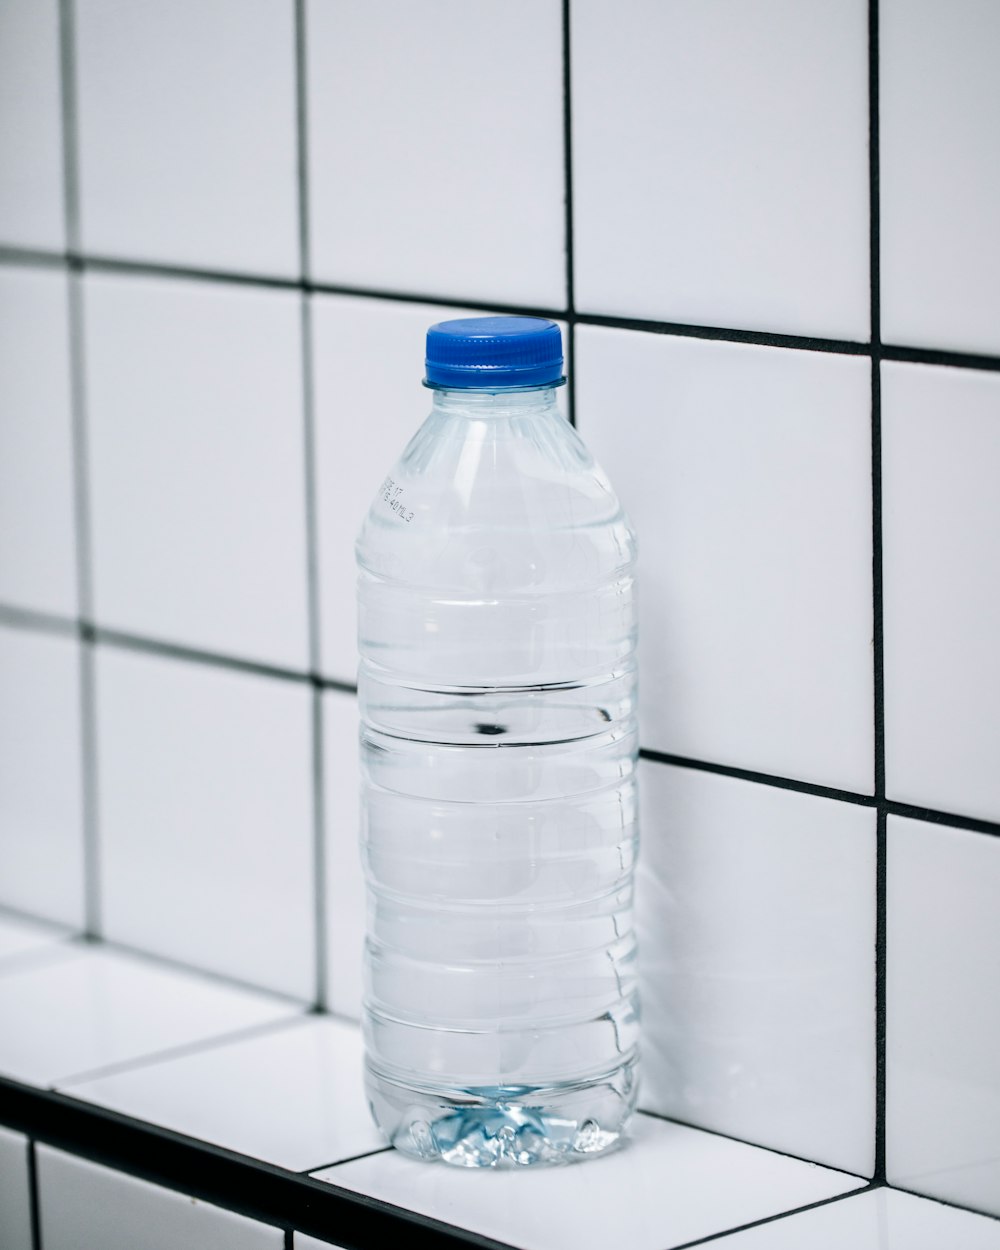 durchsichtige Plastikflasche auf weißen Keramikfliesen